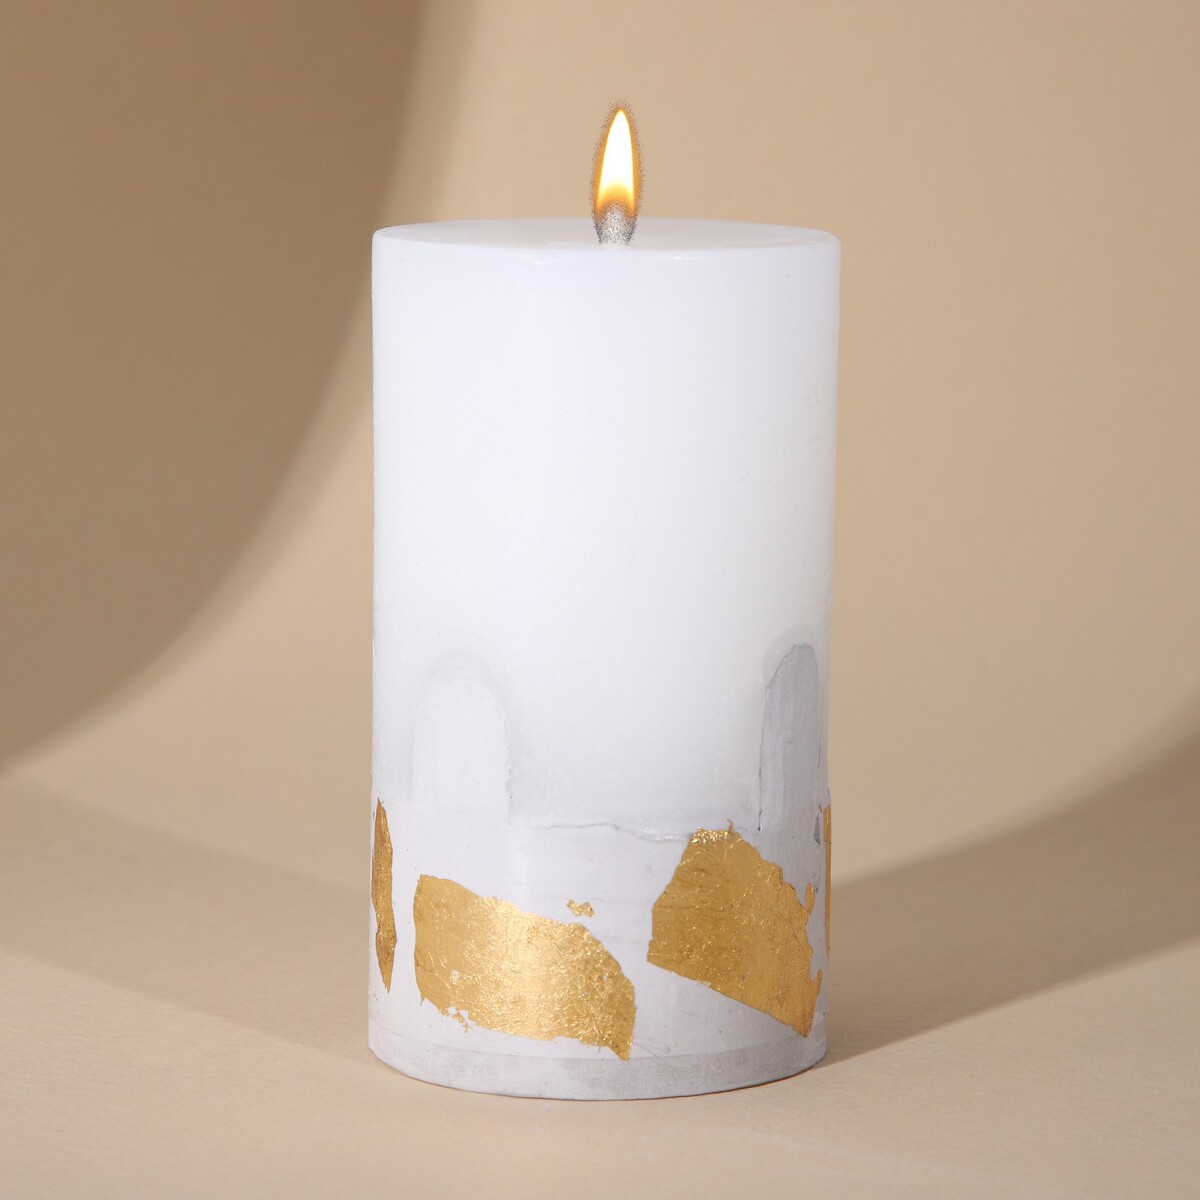 Свеча интерьерная белая с бетоном (поталь), 9,5 х 6 см свеча античная 2 2х26 см пальмовый воск белая 2 ч